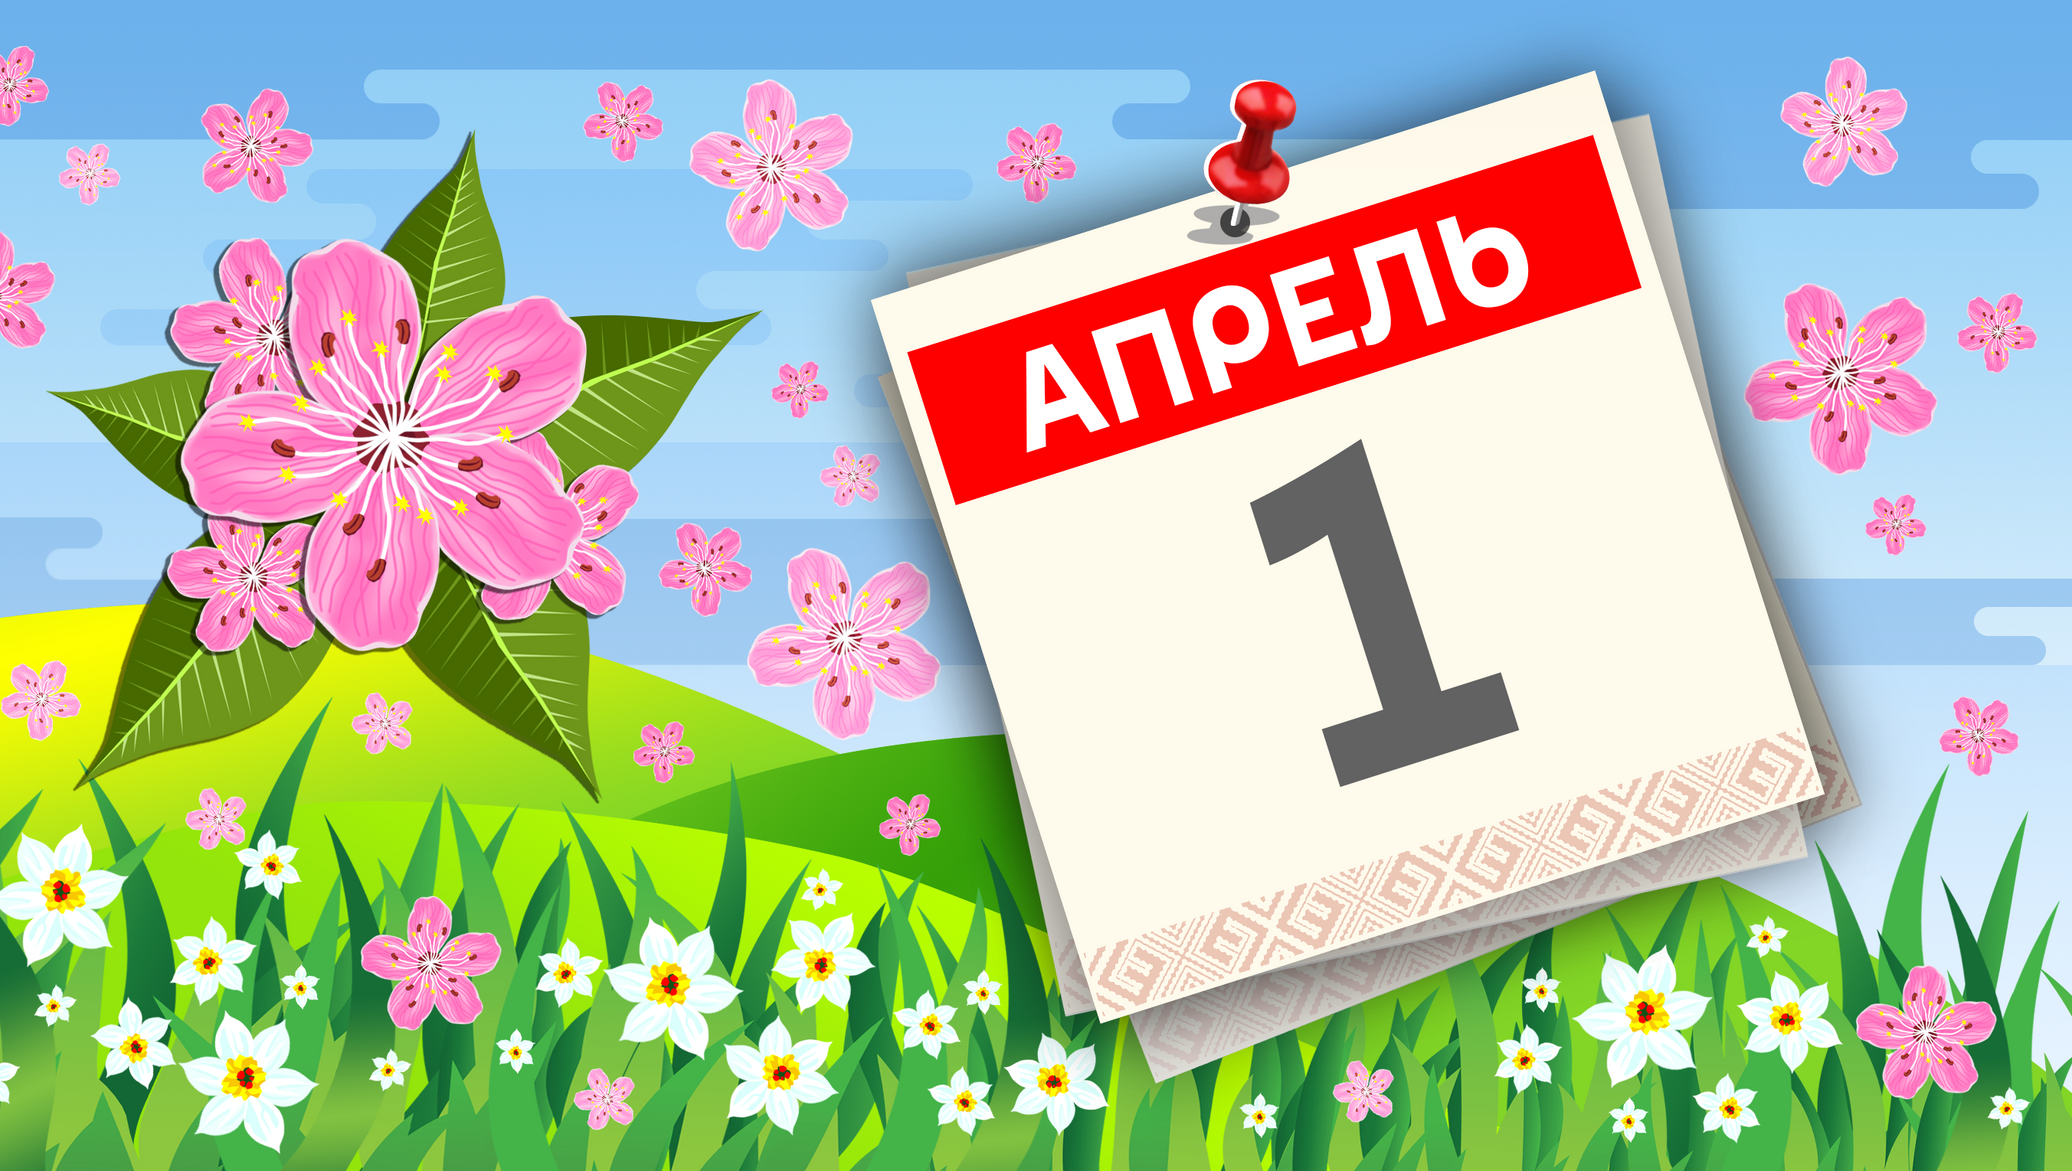 11 Апреля праздник. 20 апреля какой праздник в россии